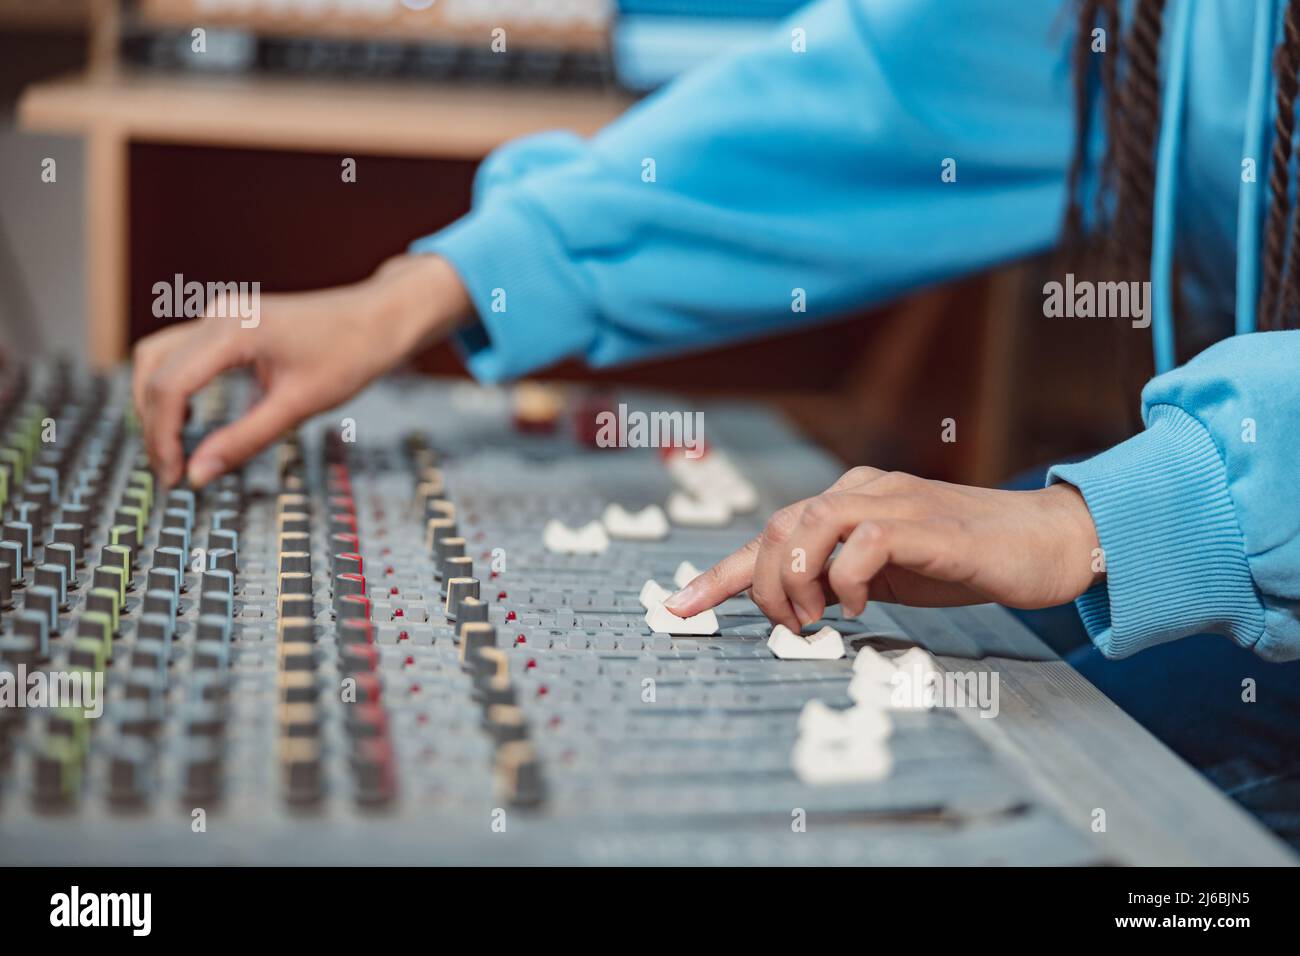 Ingeniero de sonido femenino, productor de músico manos usando tablero de mezcla y software para crear canción en estudio de grabación Foto de stock